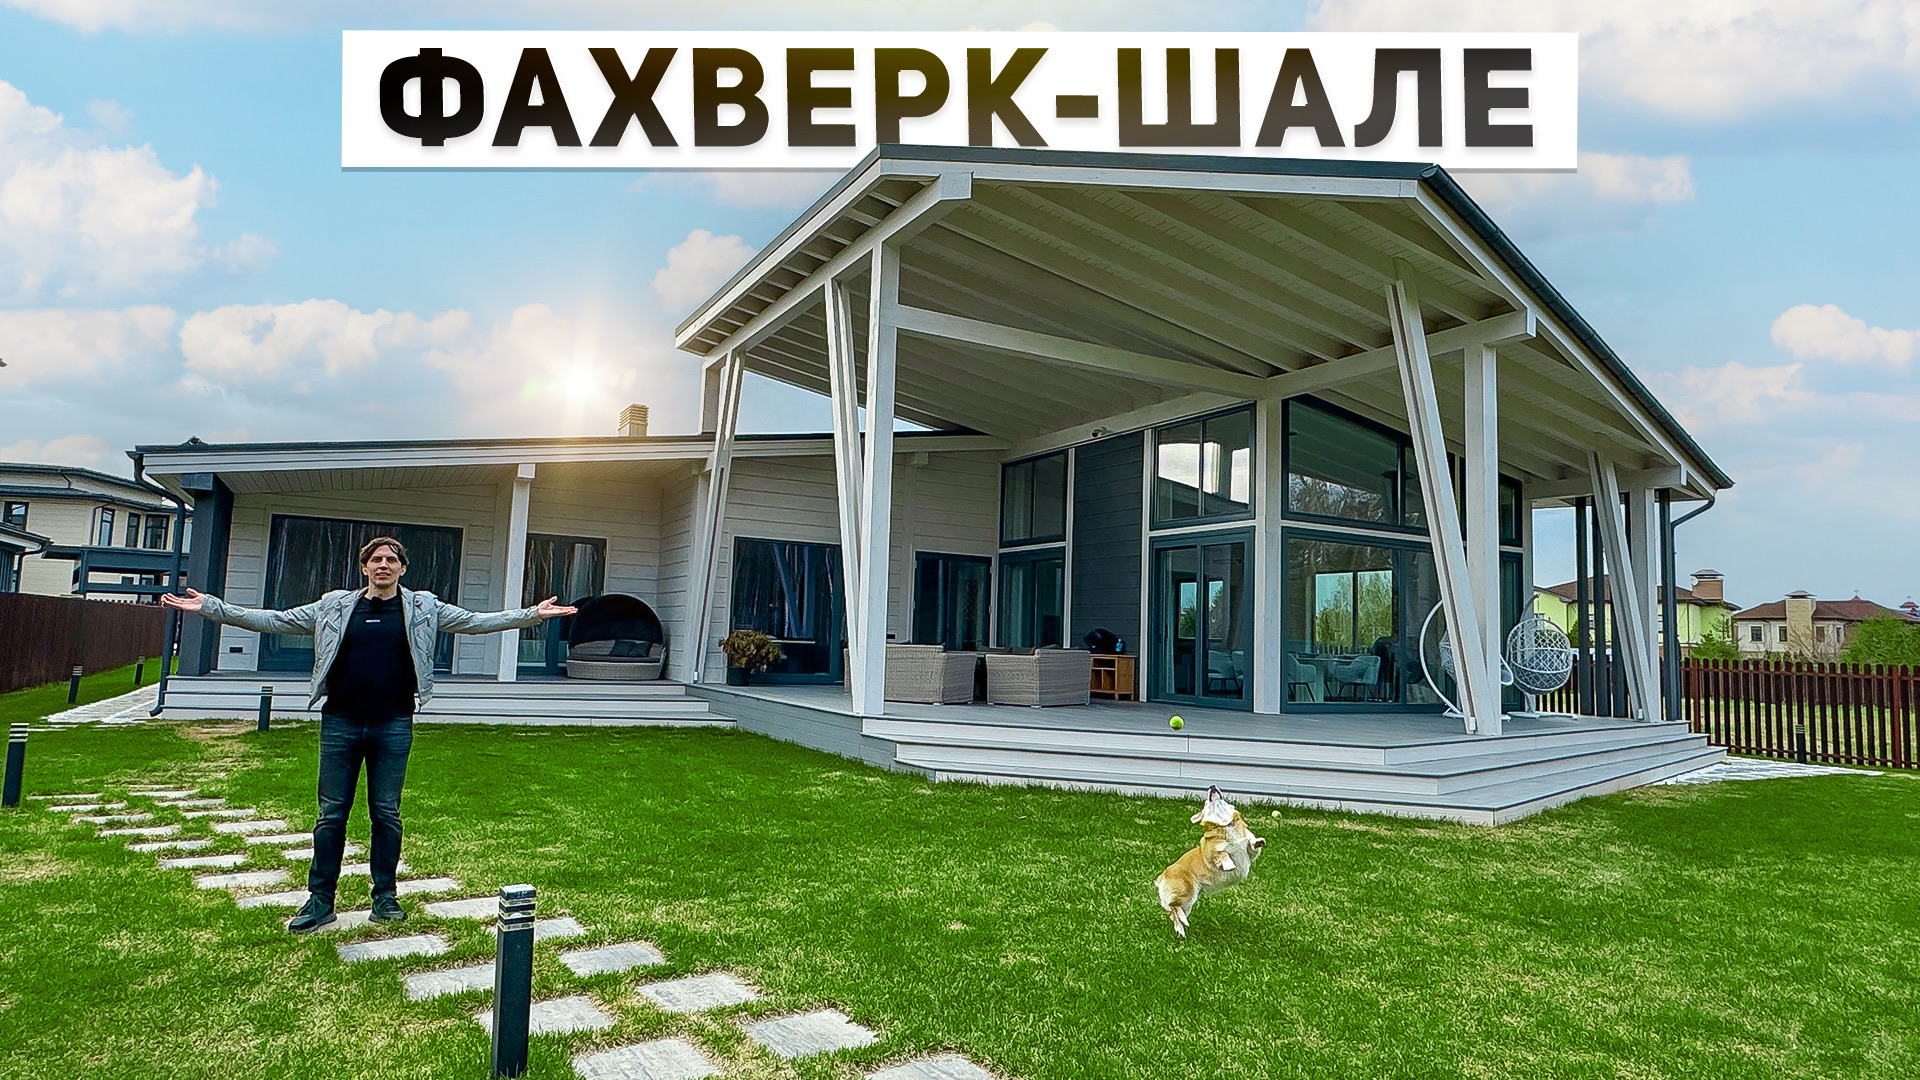 Обзор современных домов фахверк-шале в Подмосковье